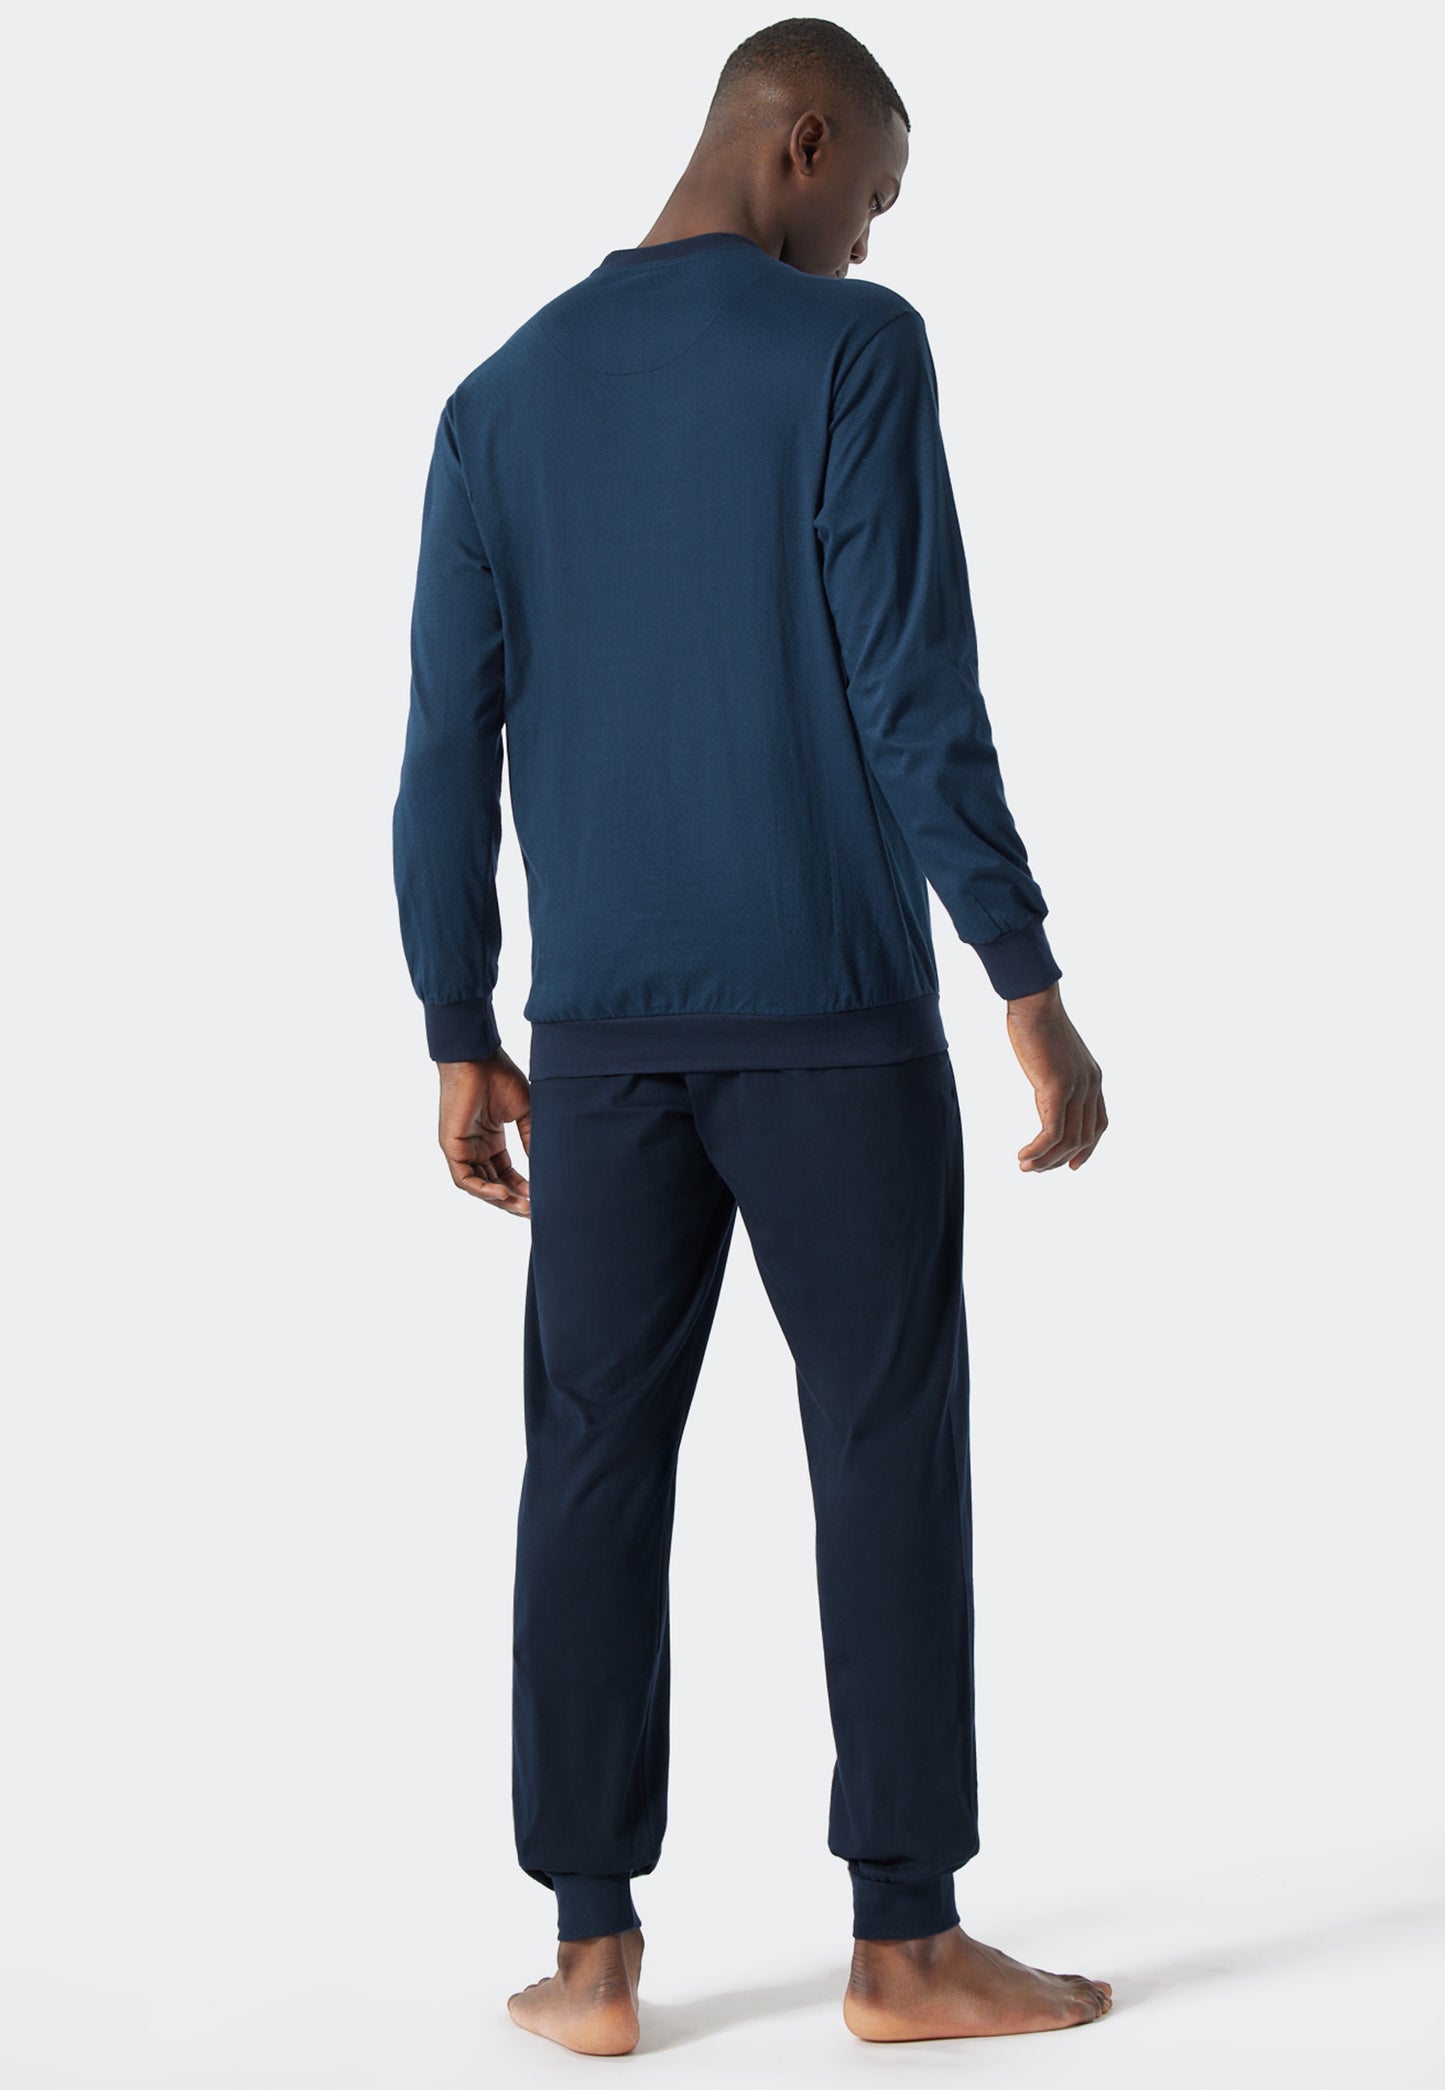 Pyjama long encolure arrondie bords-côtes motifs bleu roi/bleu foncé - Essentials Nightwear